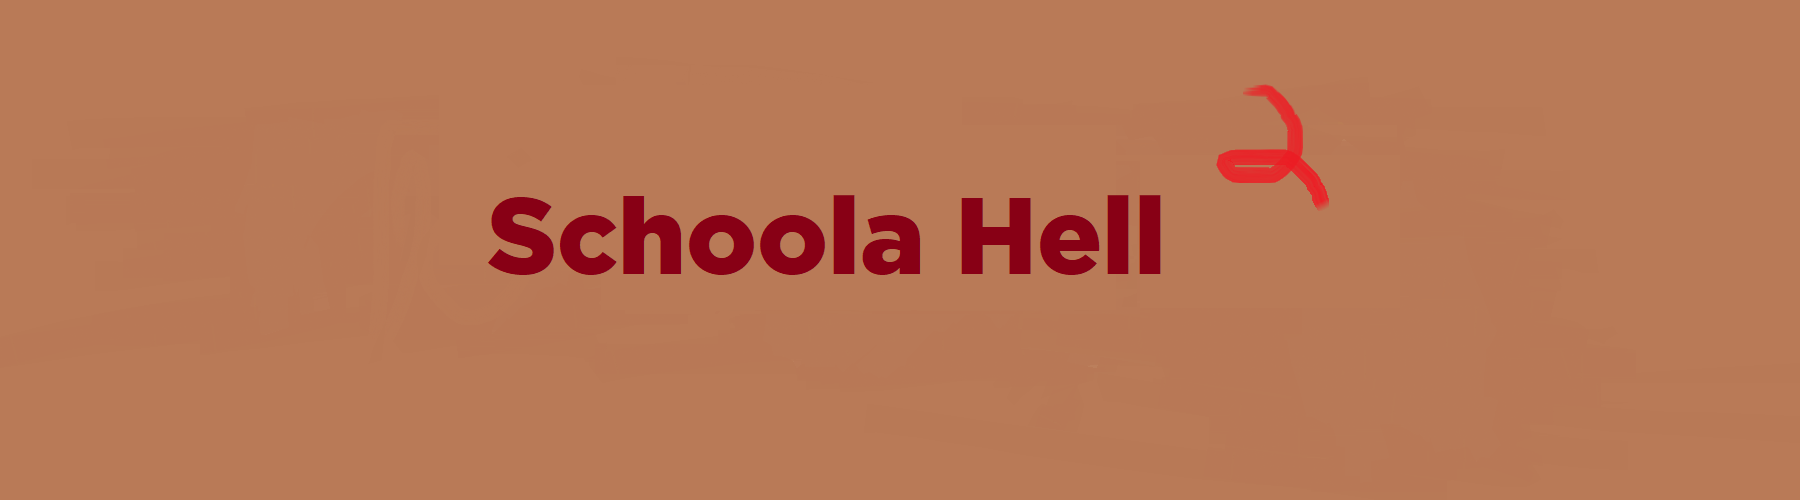 Shoola Hell